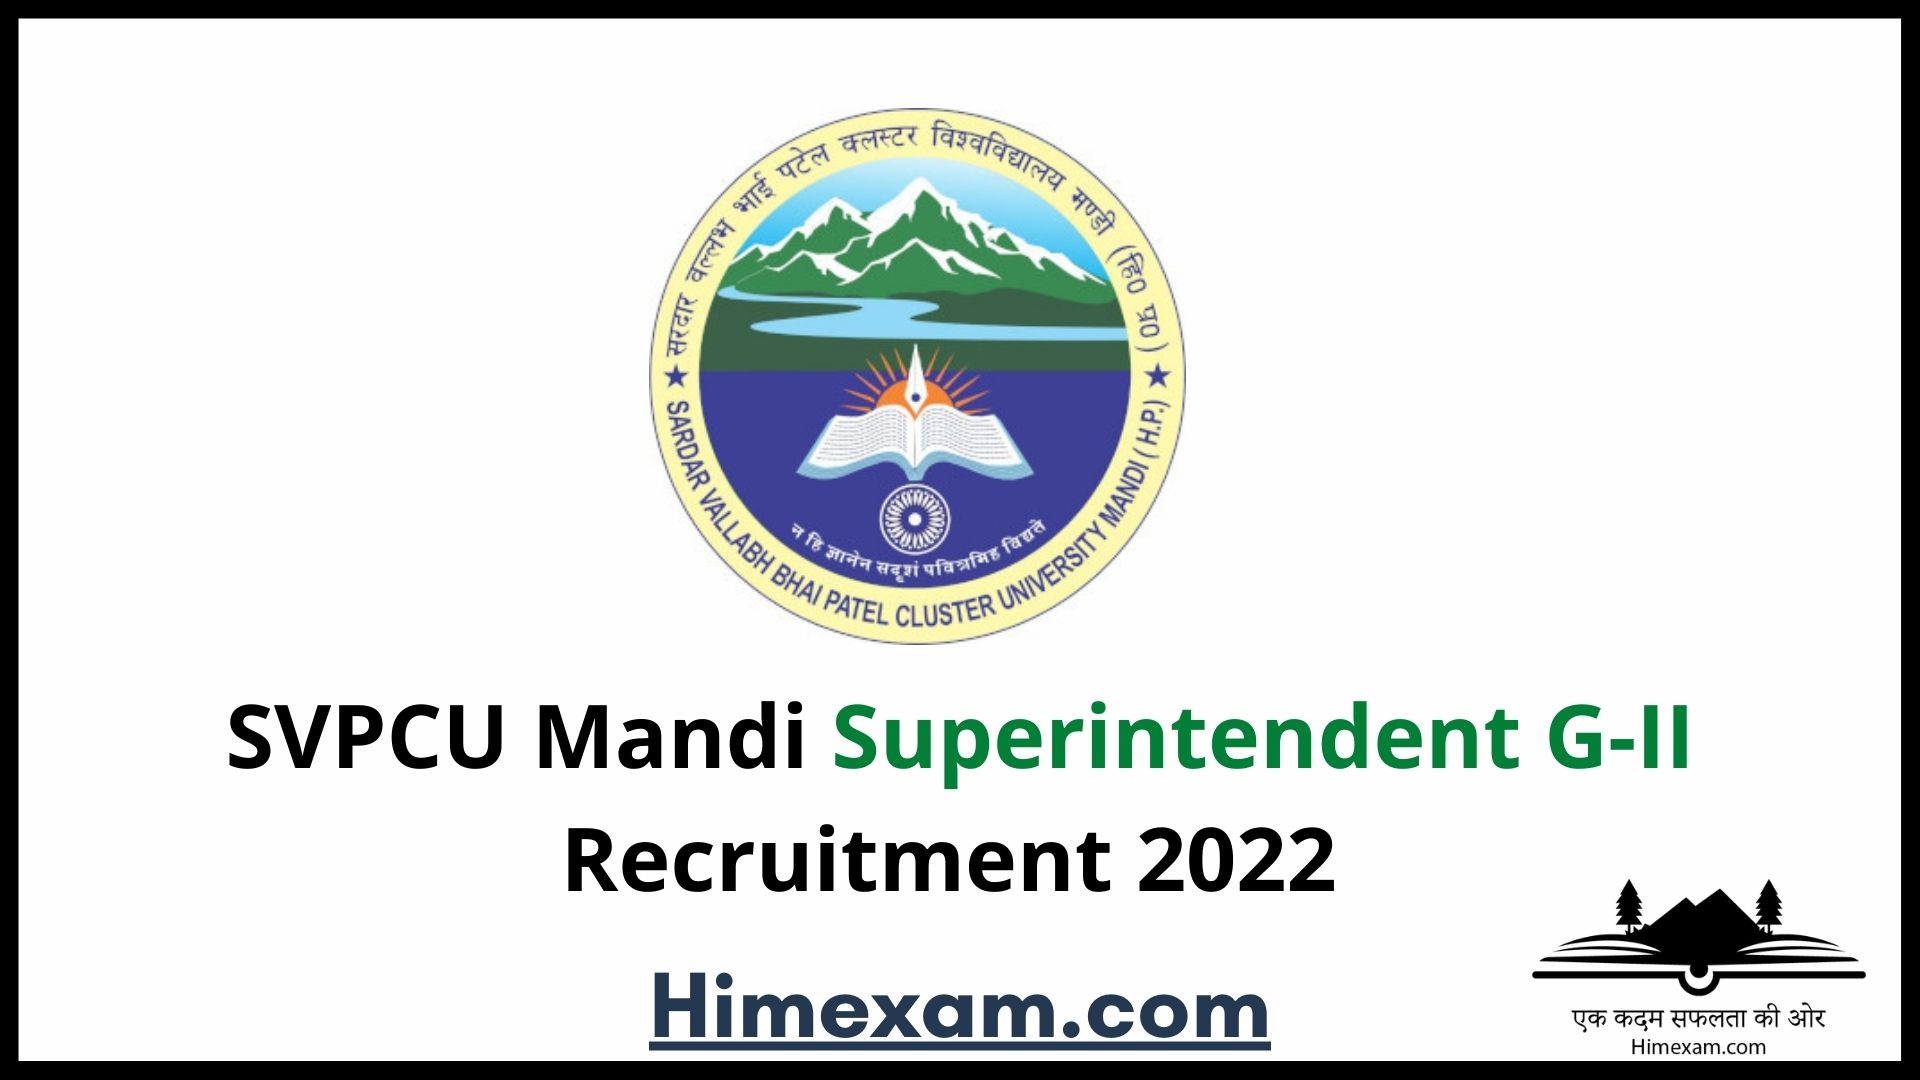 SVPCU Mandi Superintendent G-II Recruitment 2022